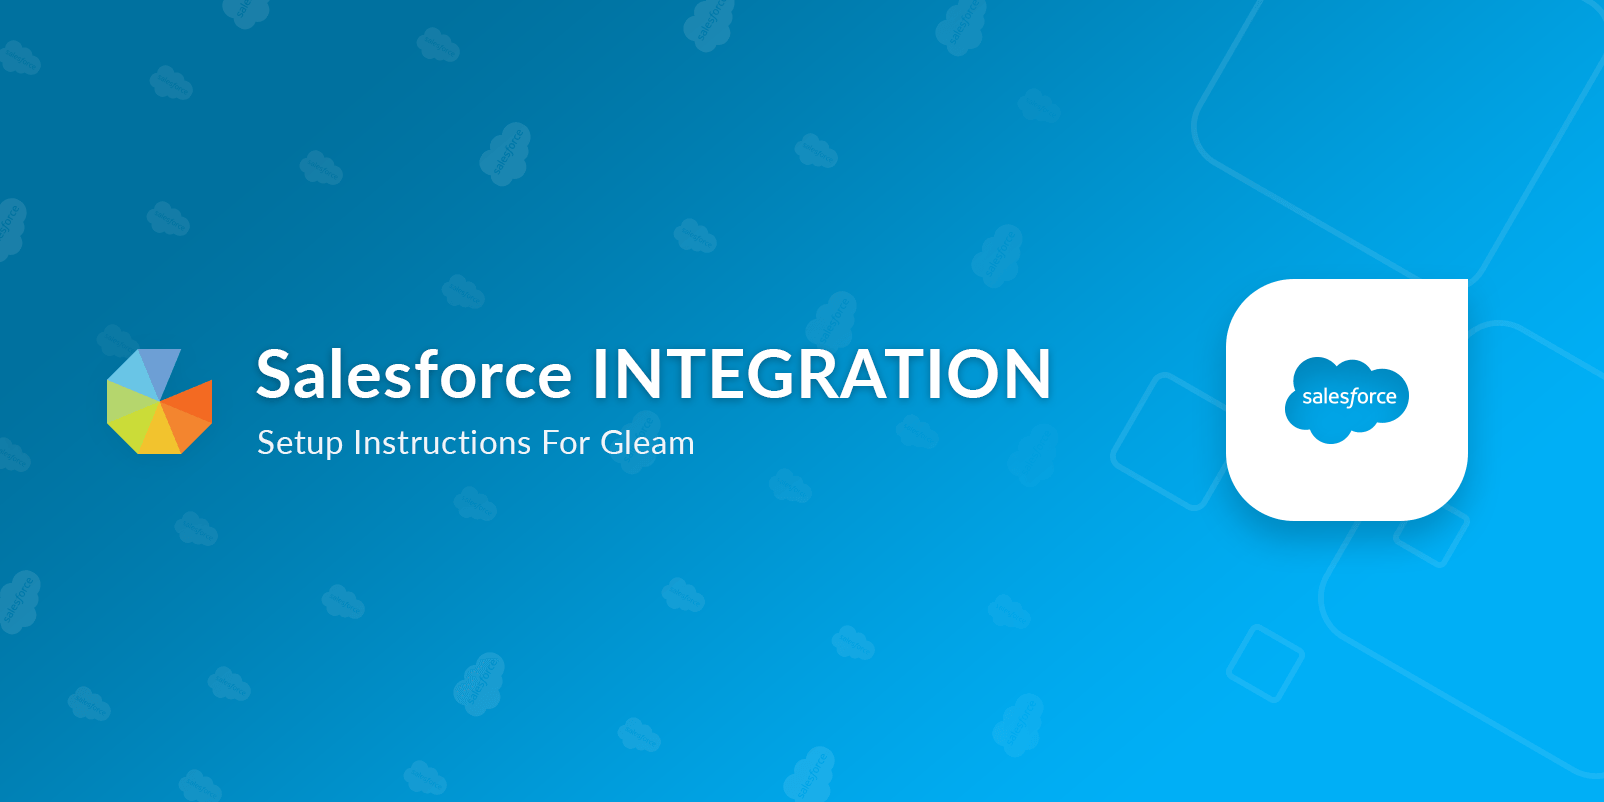 Salesforce integration setup instructions for Gleam